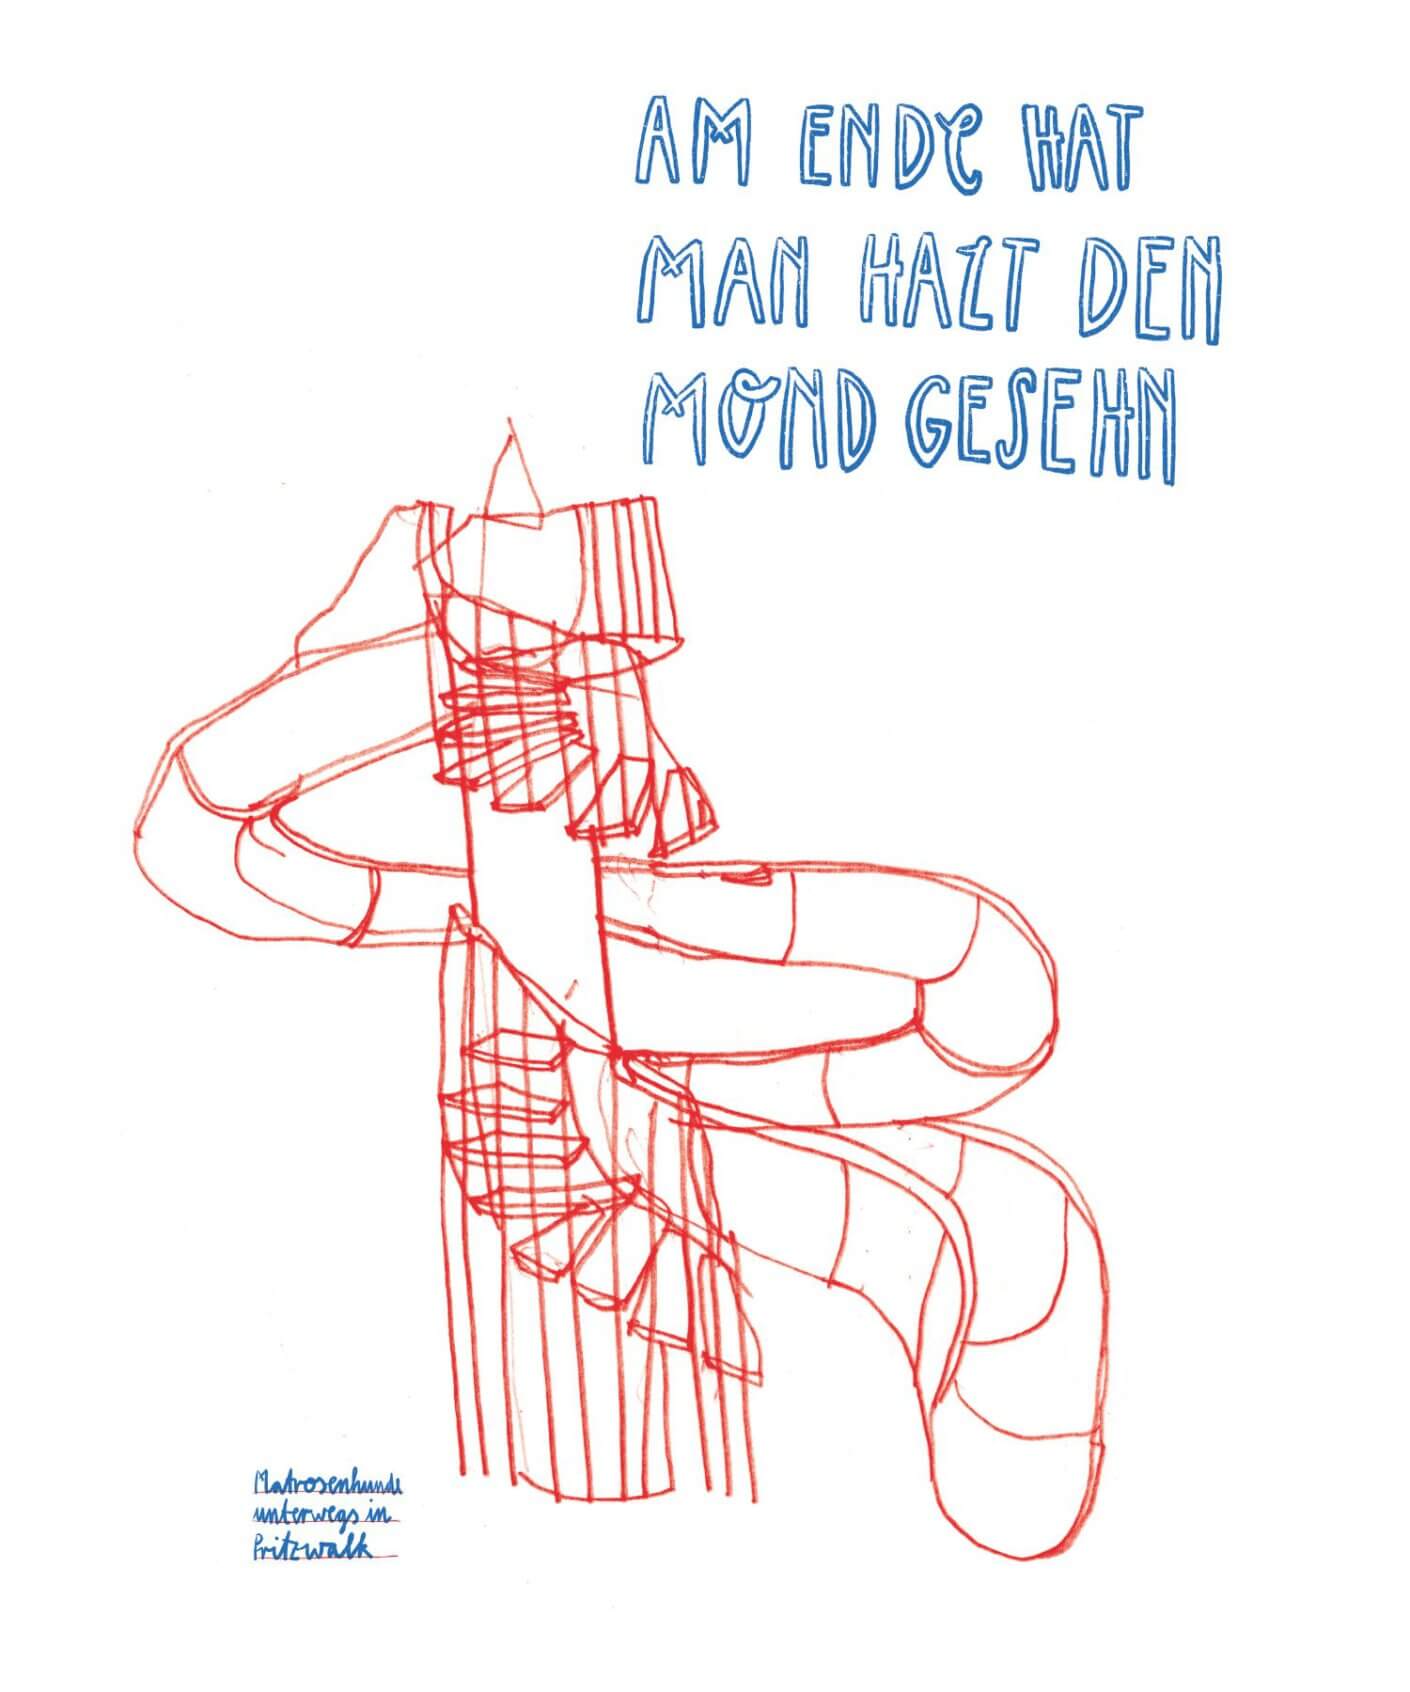 Matrosenhunde, Am Ende hat man halt den Mond gesehen, illustration aus Berlin, Freibad, Rutsche, Pritzwalk